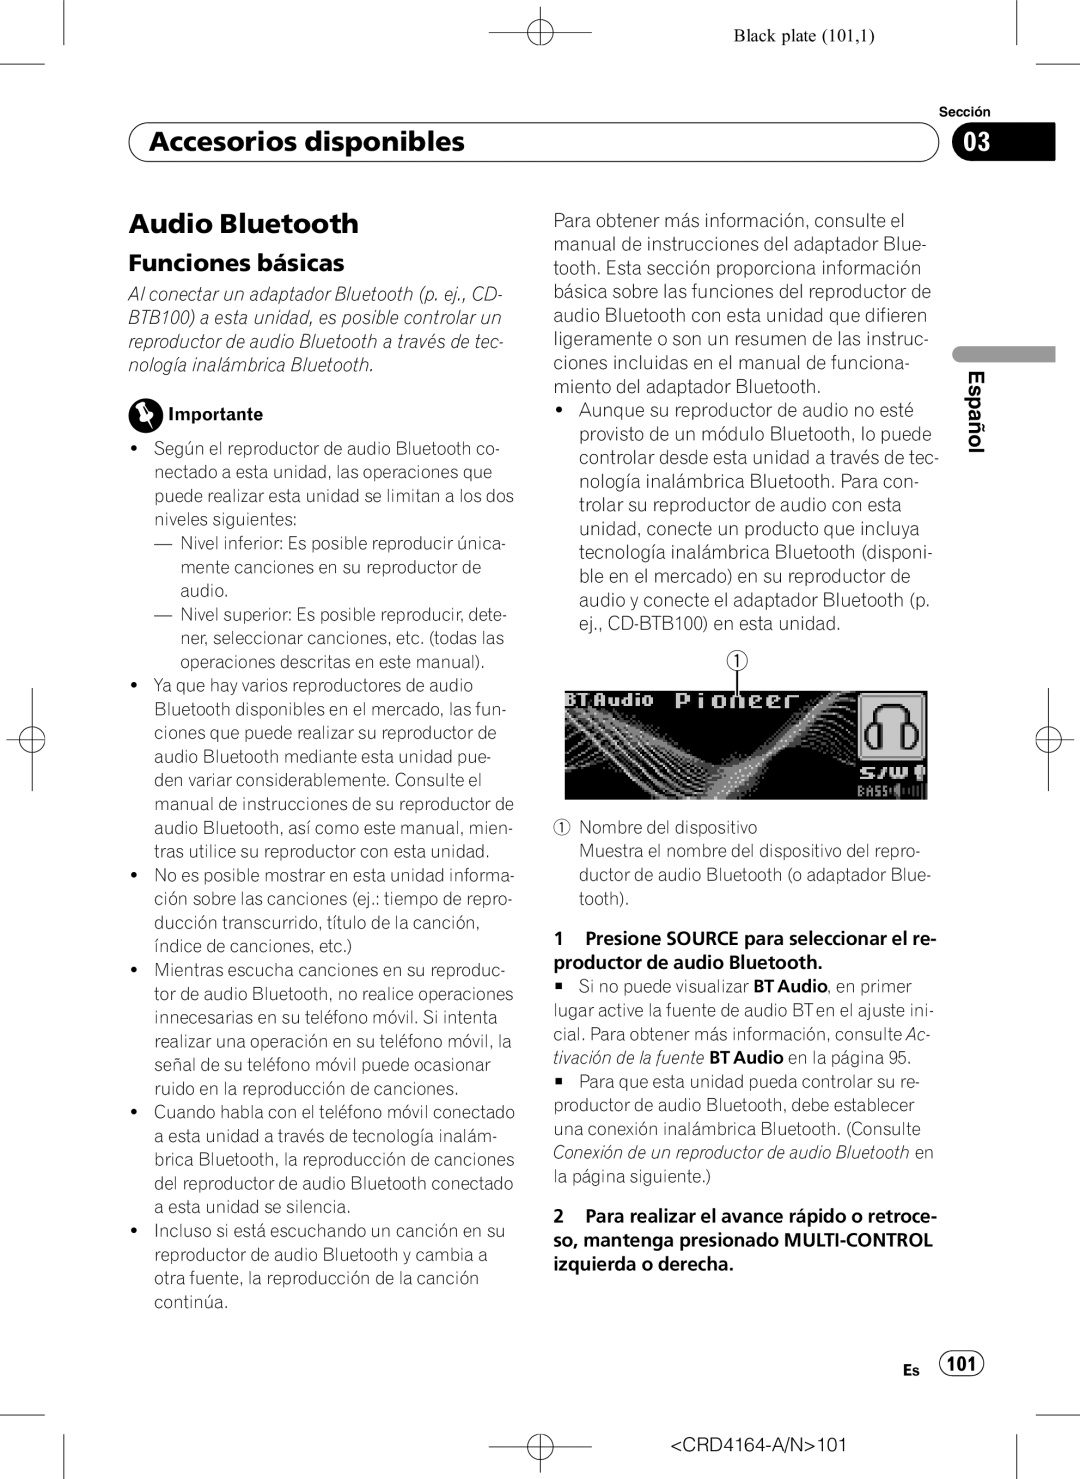 Pioneer DEH-P7950UB operation manual Audio Bluetooth, Black plate 101,1, Accesorios disponibles, Funciones básicas, Español 